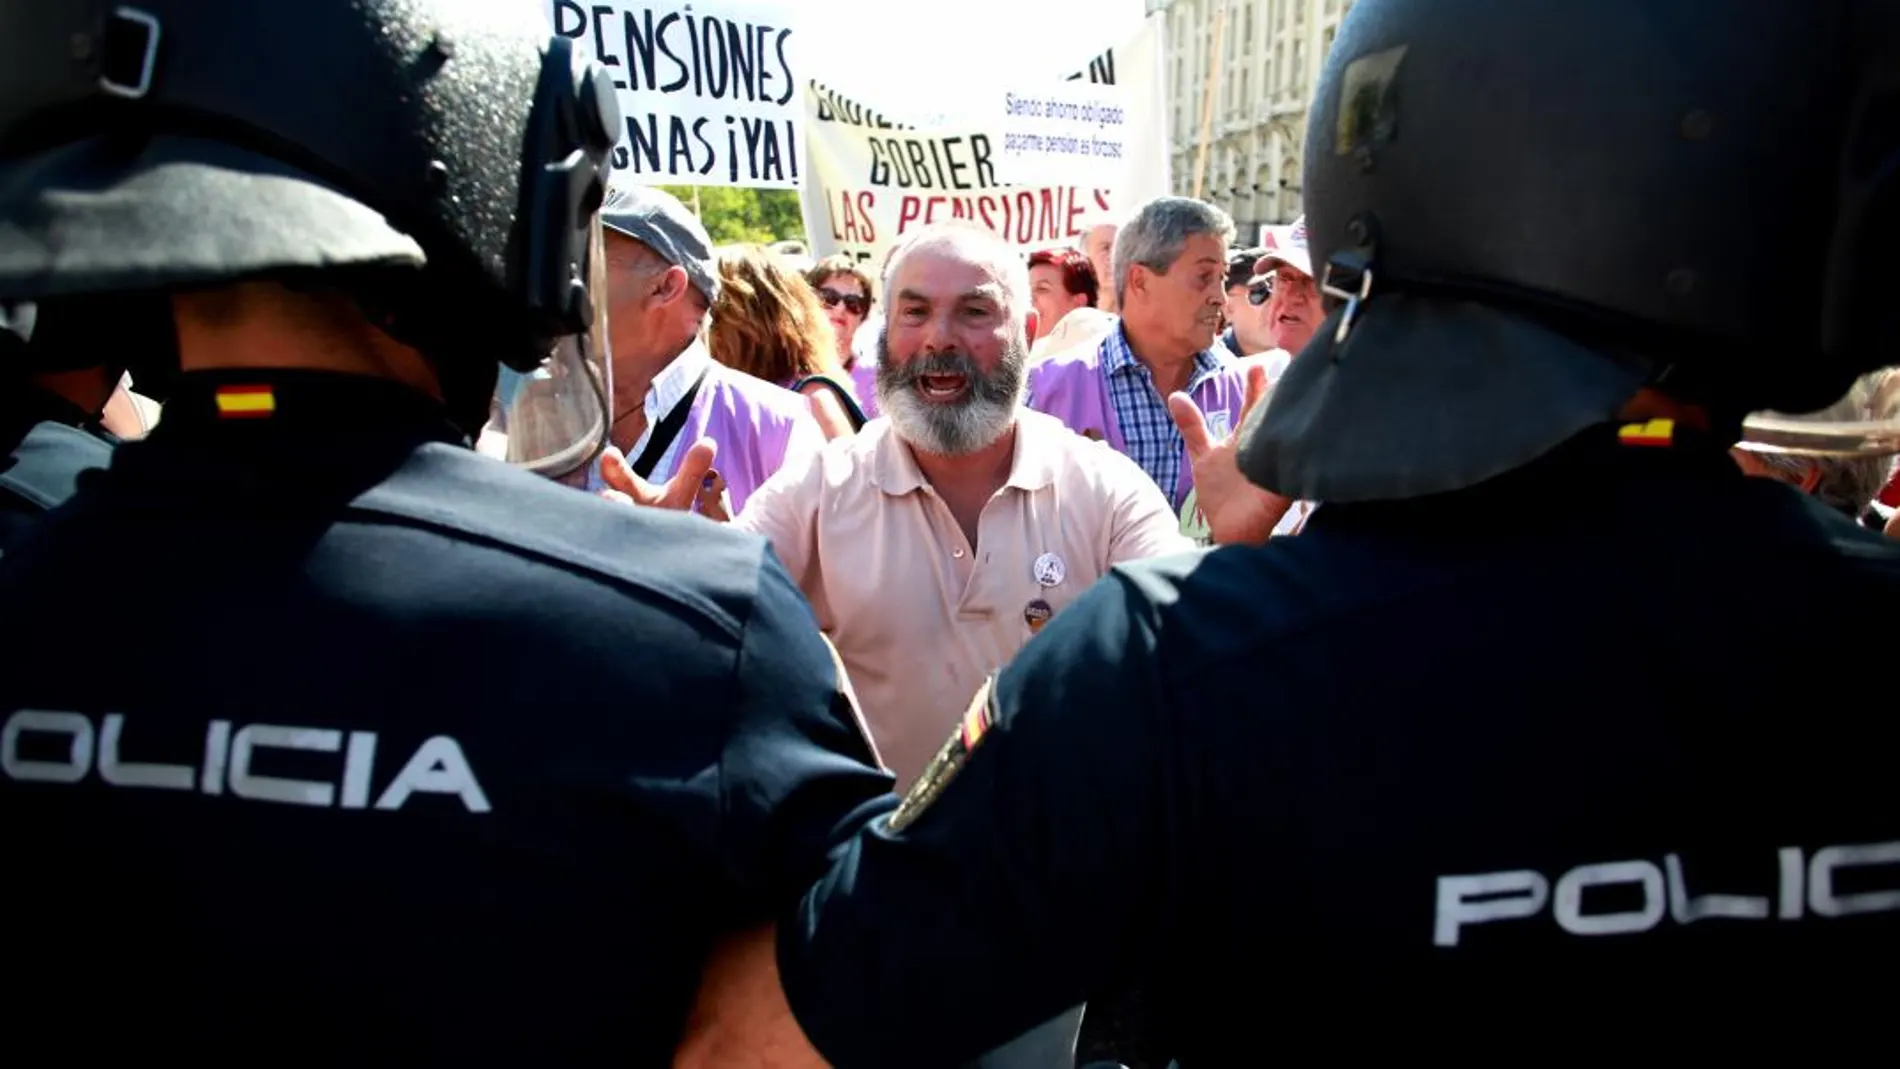 Los pensionistas y los agentes de la Policía Nacional, cara a cara a las puertas del Congreso. Cipriano Pastrano